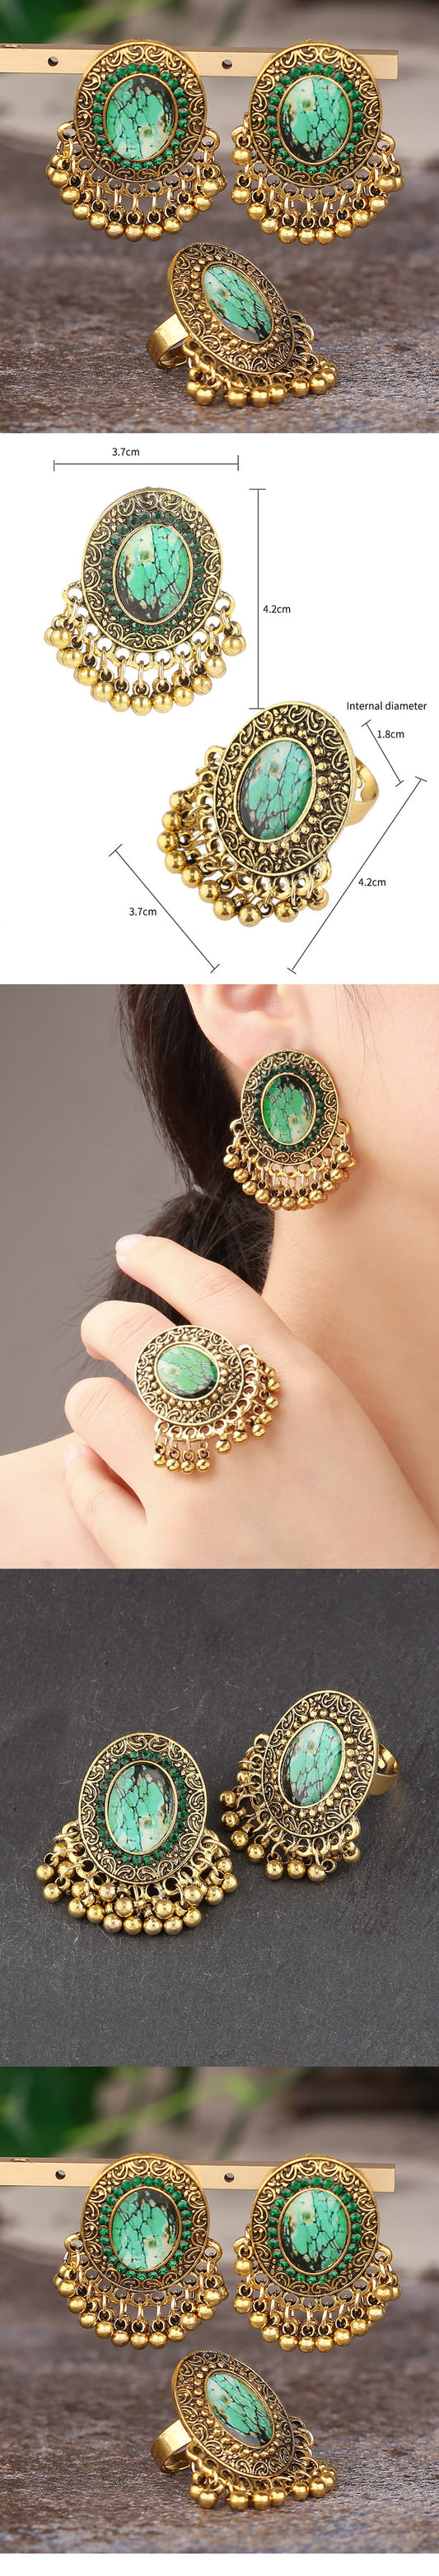 Retro Ethnic Style Geometric Alloy Women's Rings Earrings